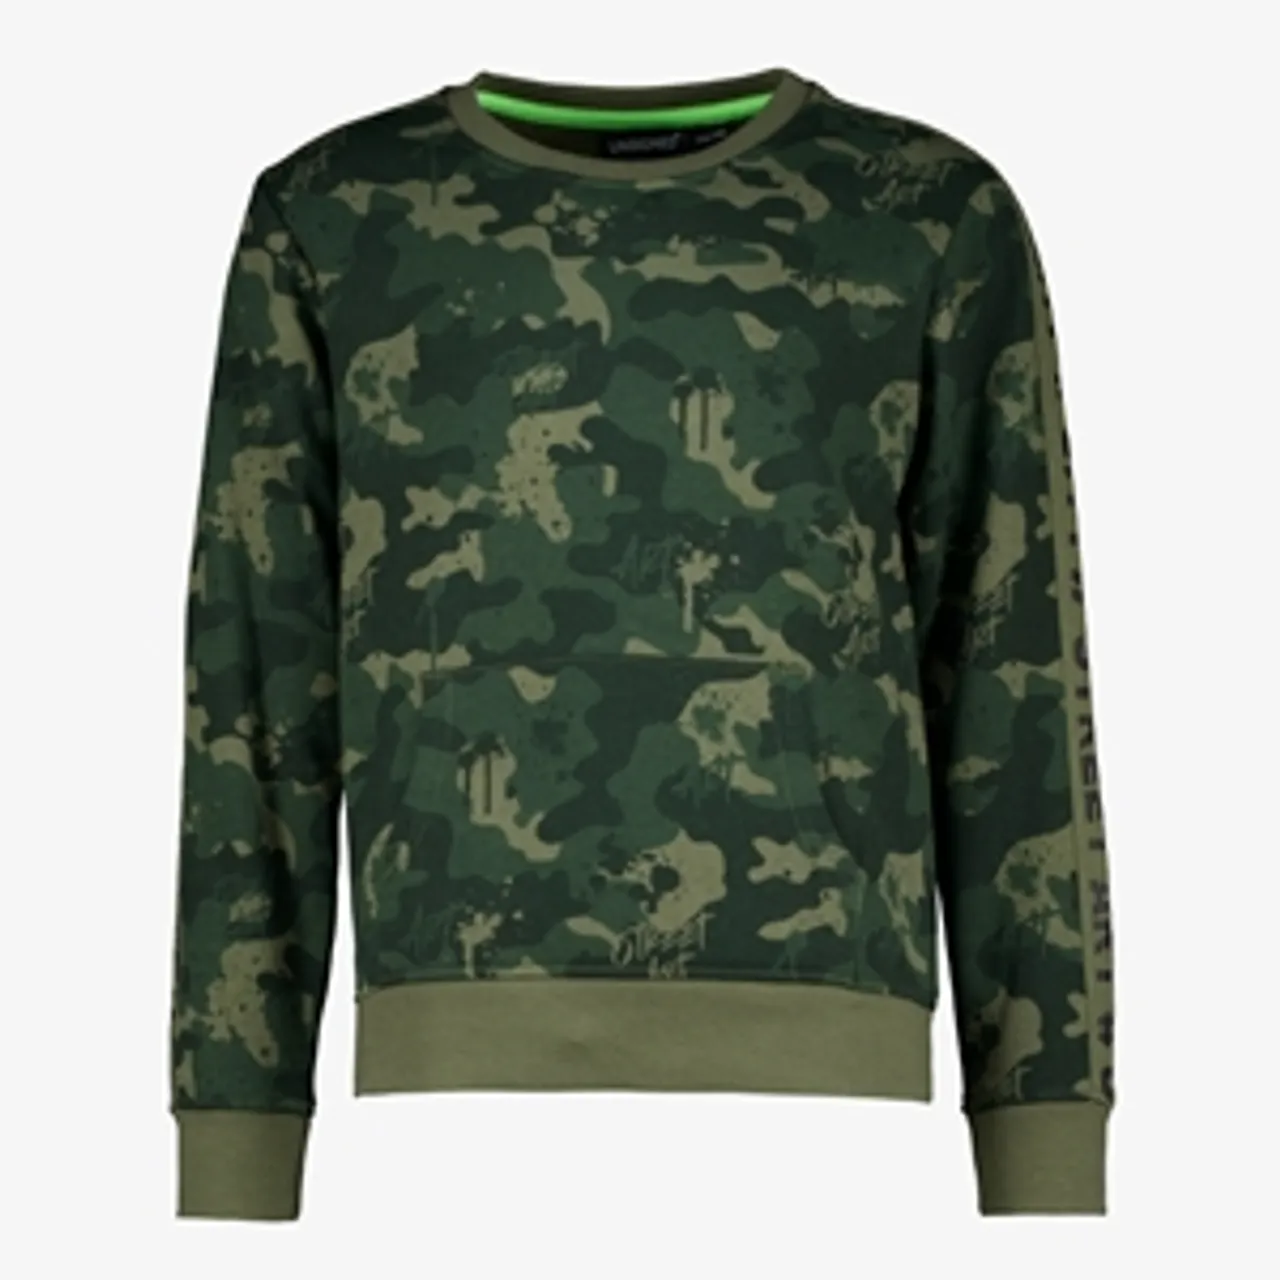 Unsigned jongens sweater met camouflage print